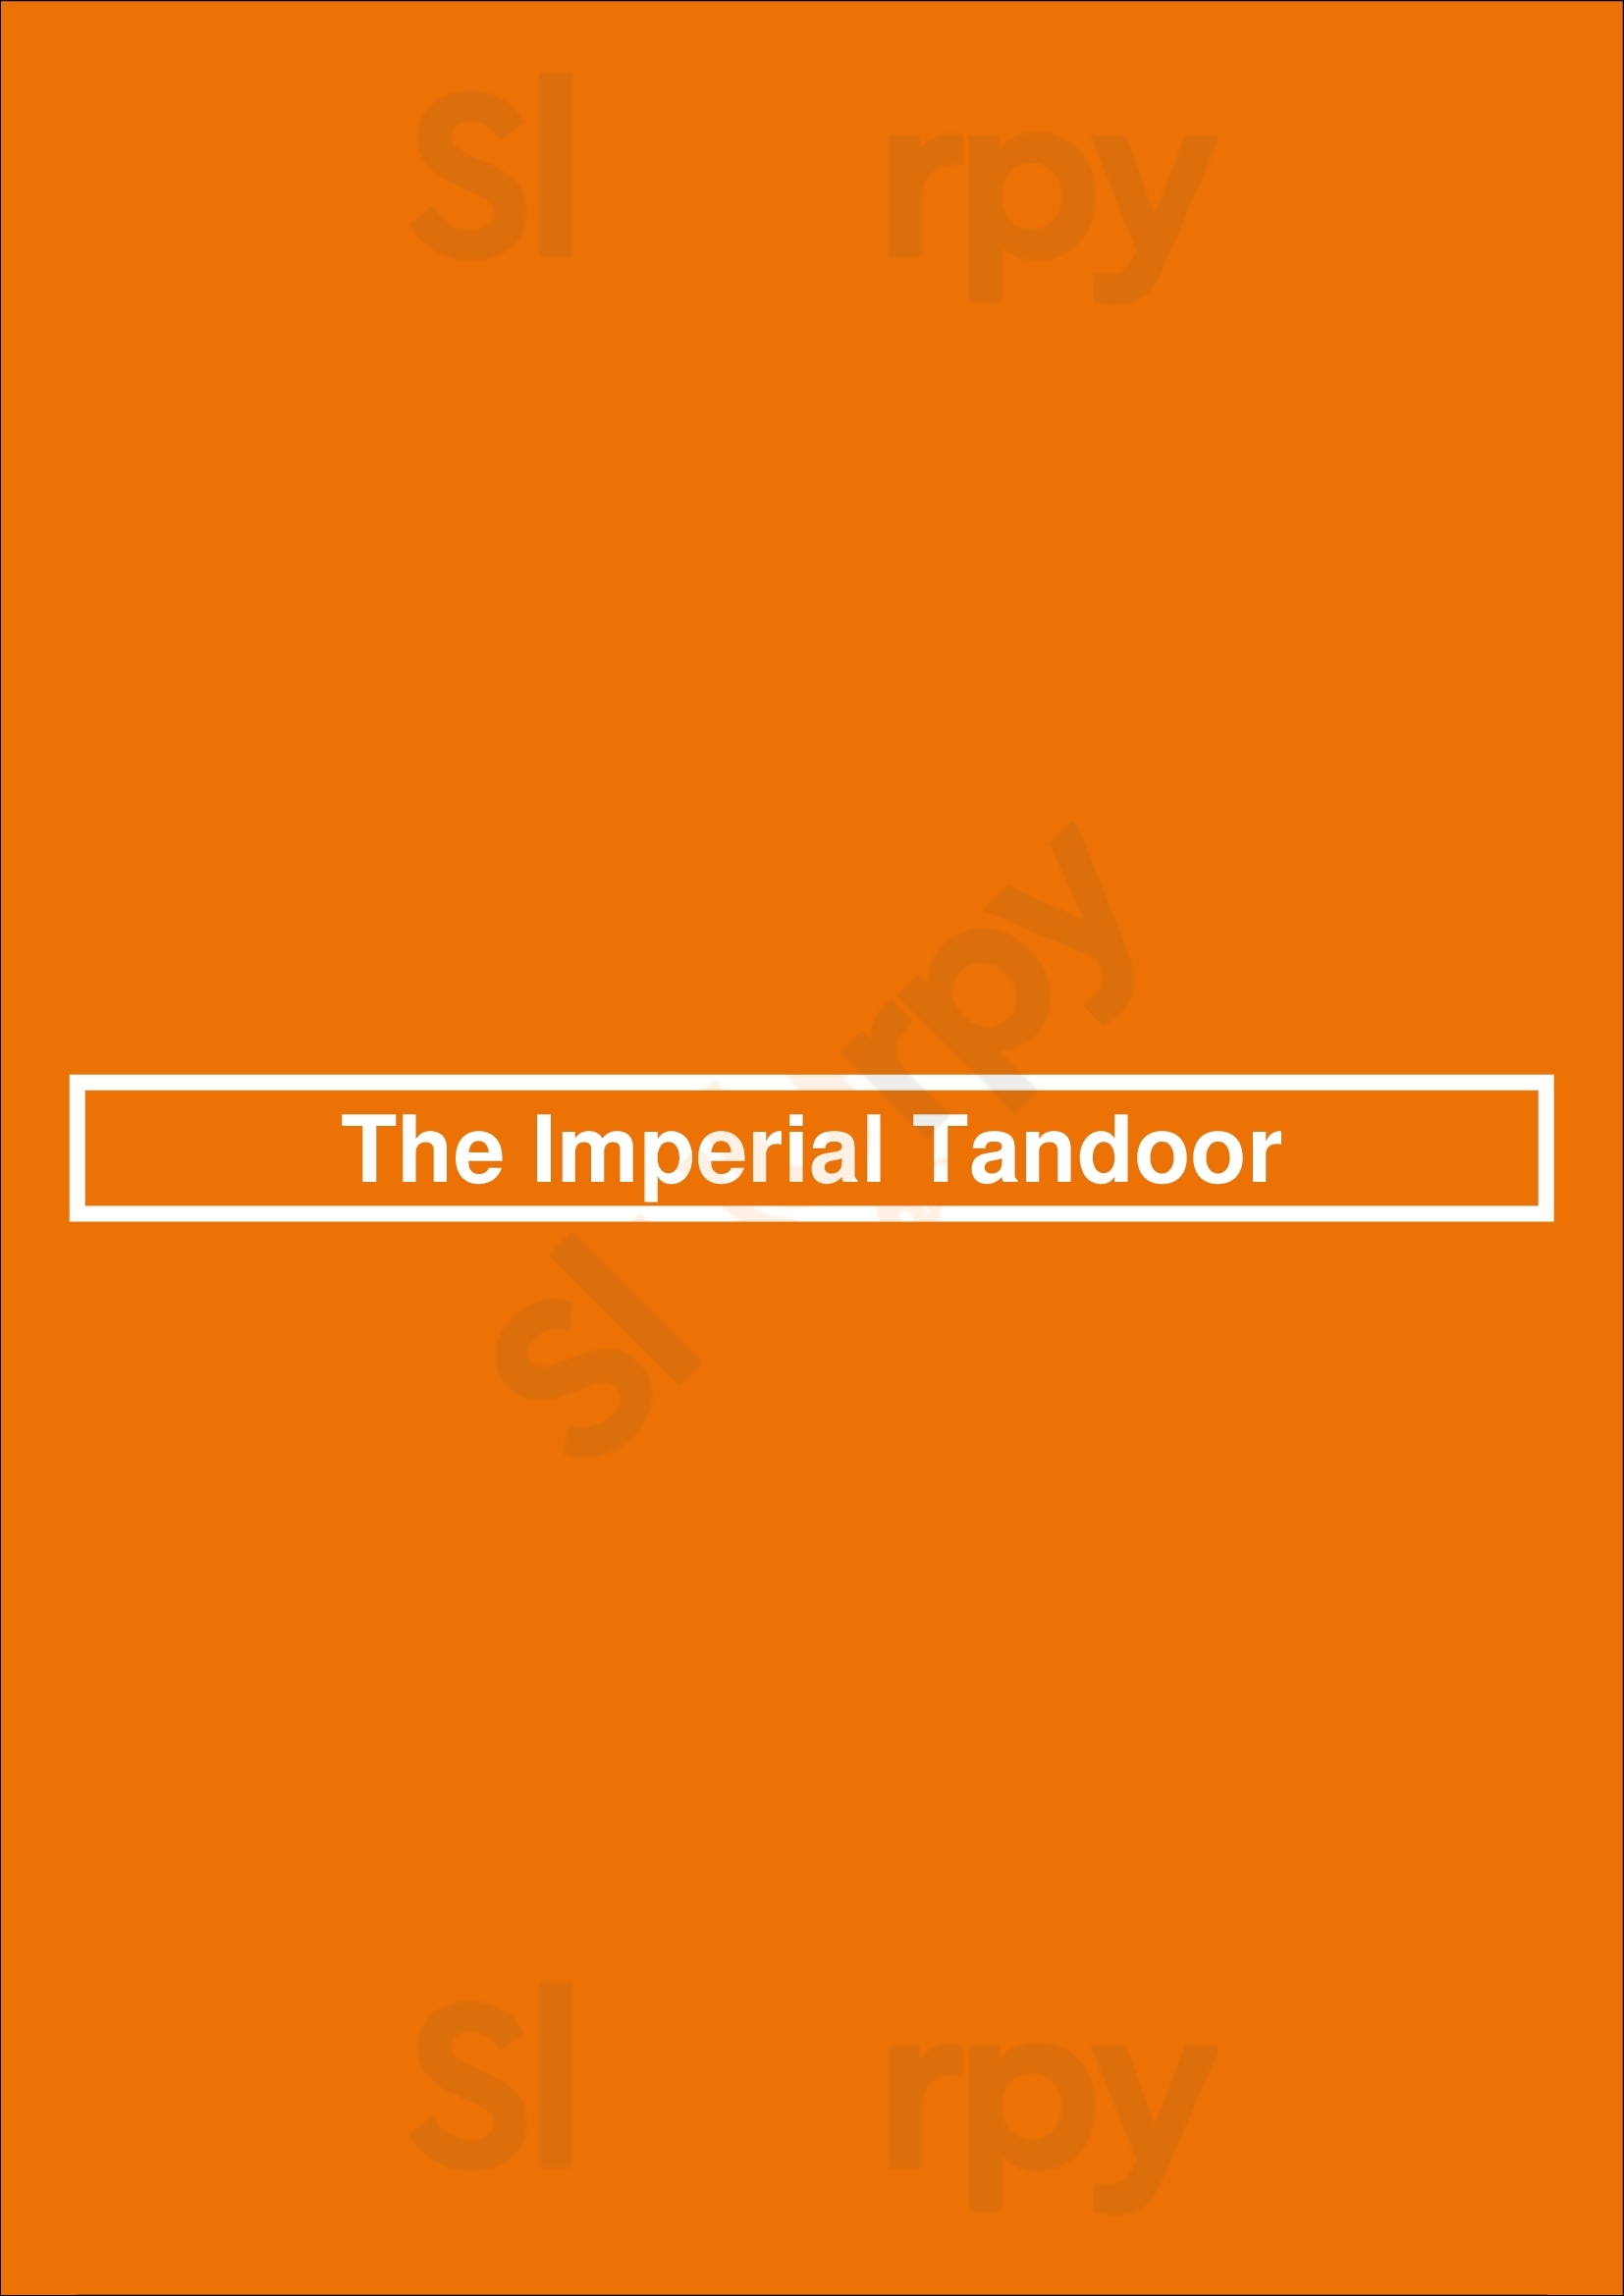 The Imperial Tandoor Peterborough Menu - 1